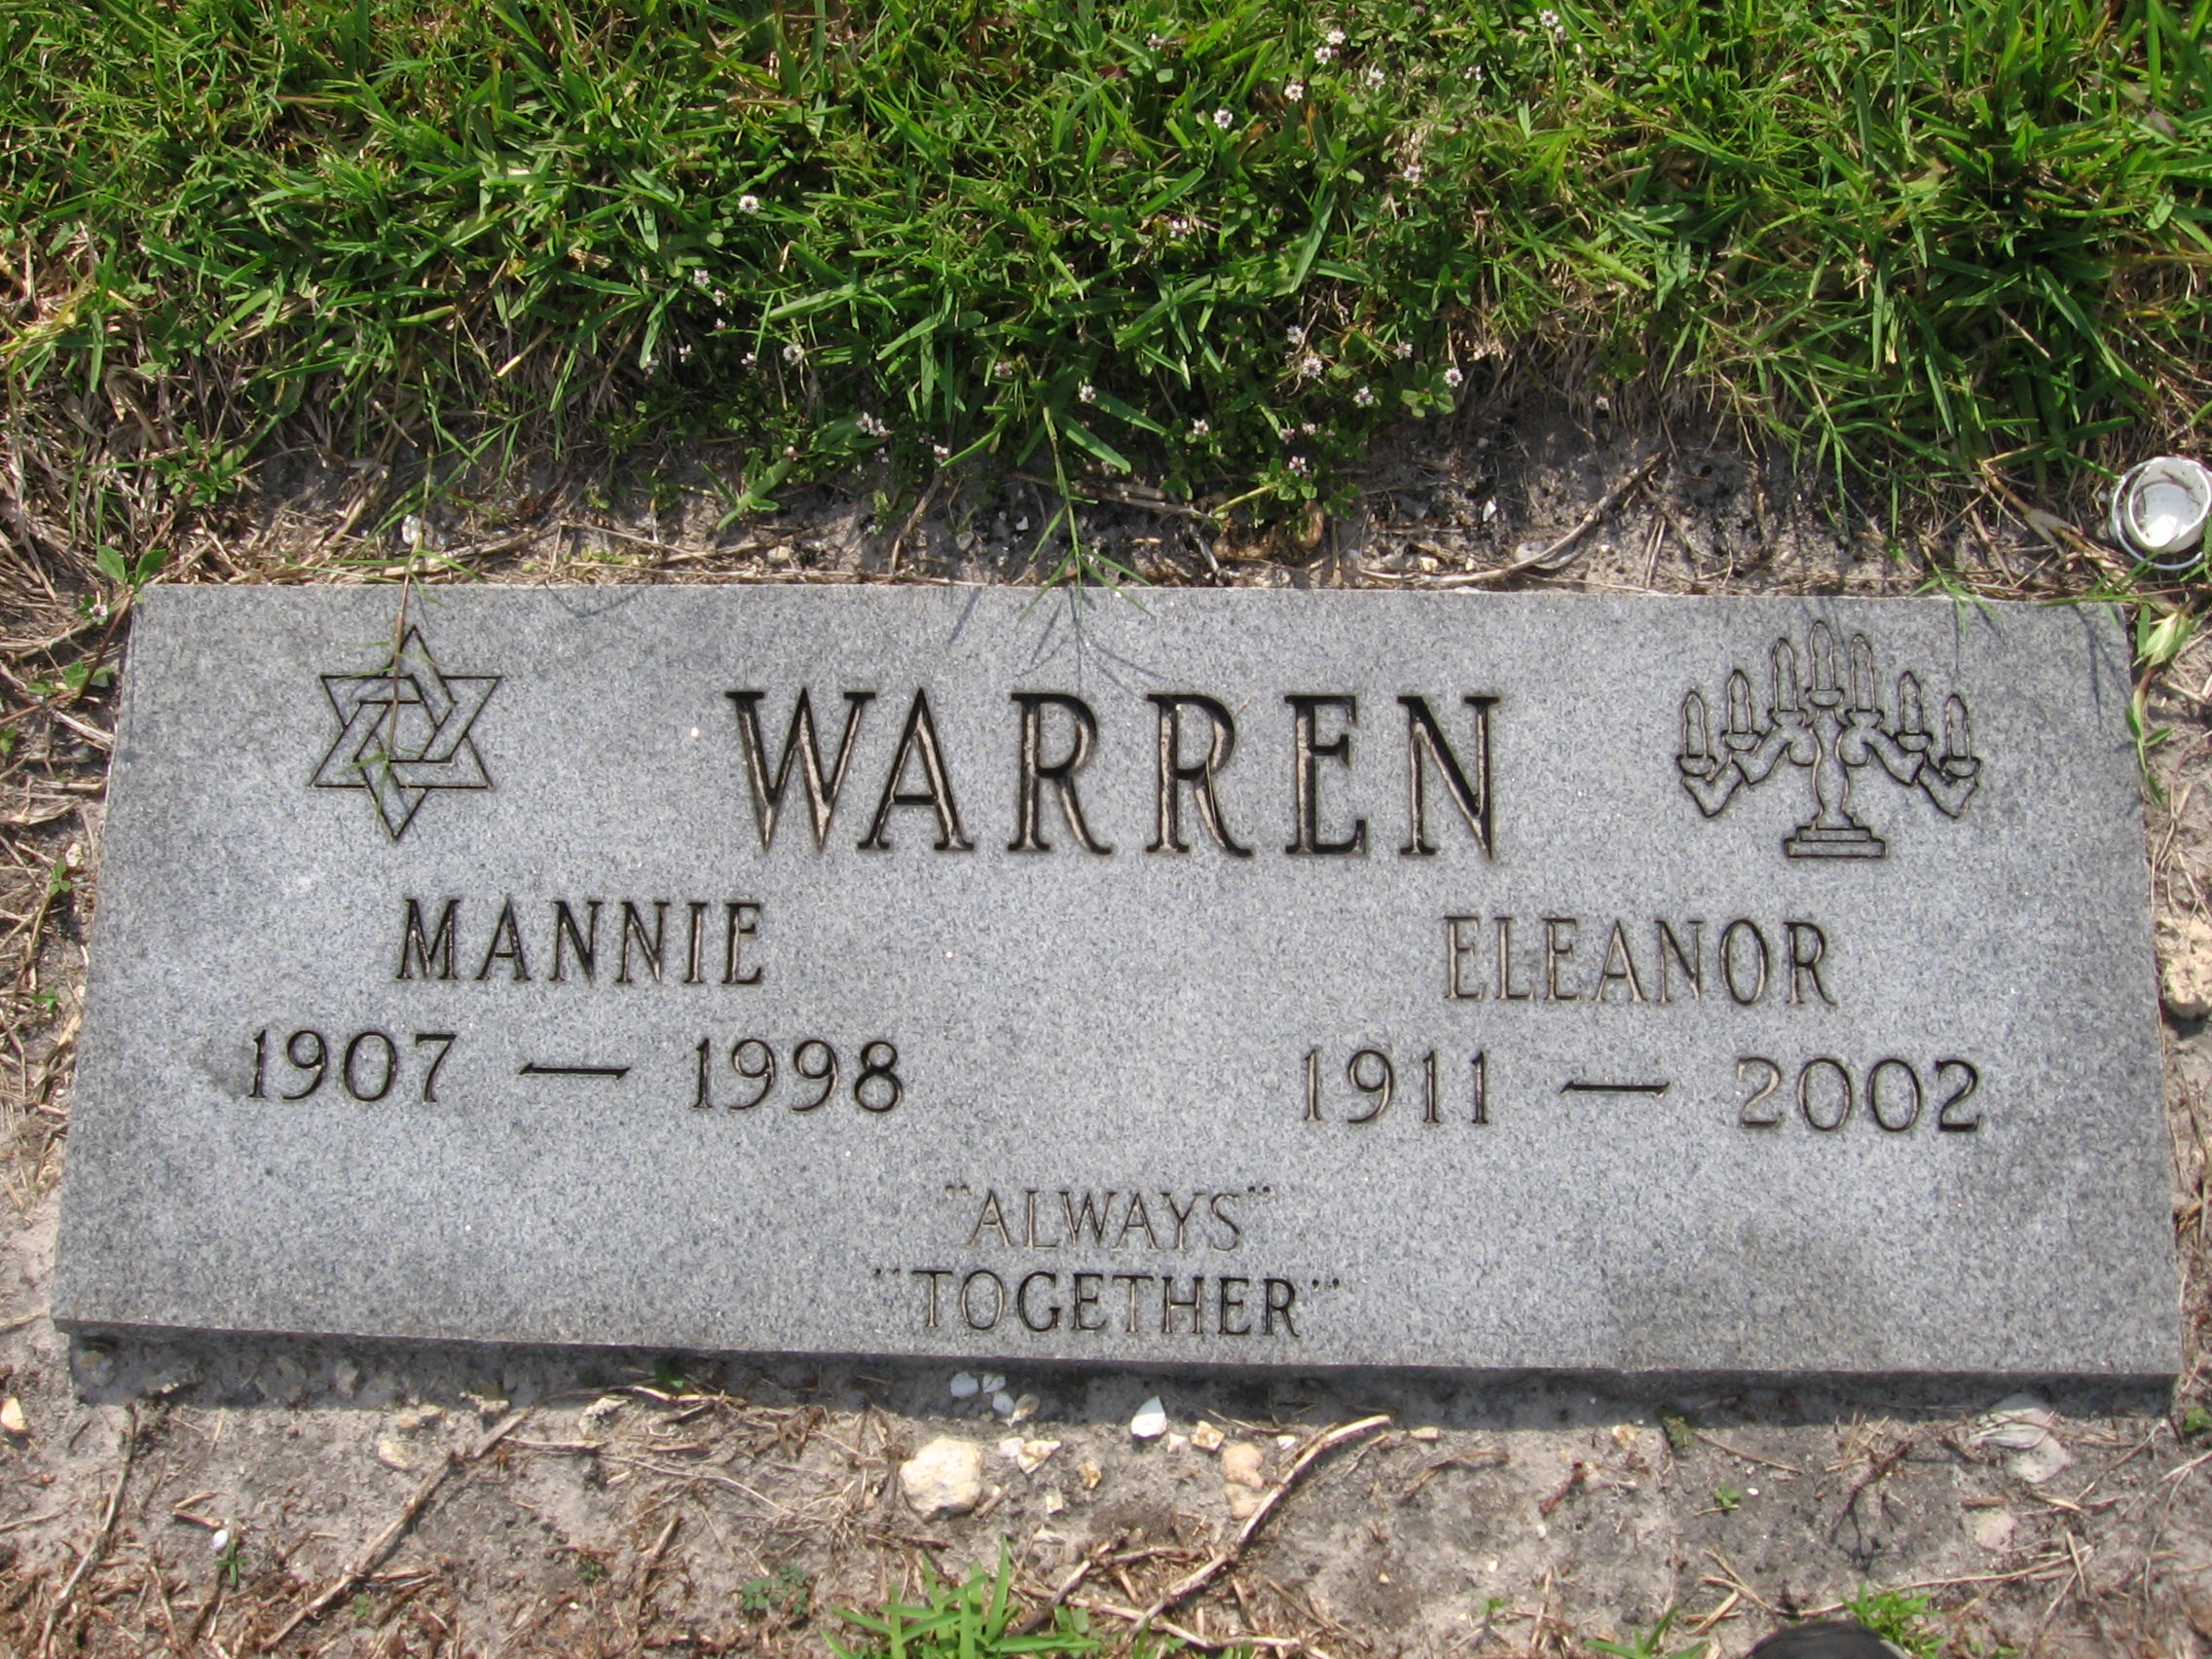 Mannie Warren